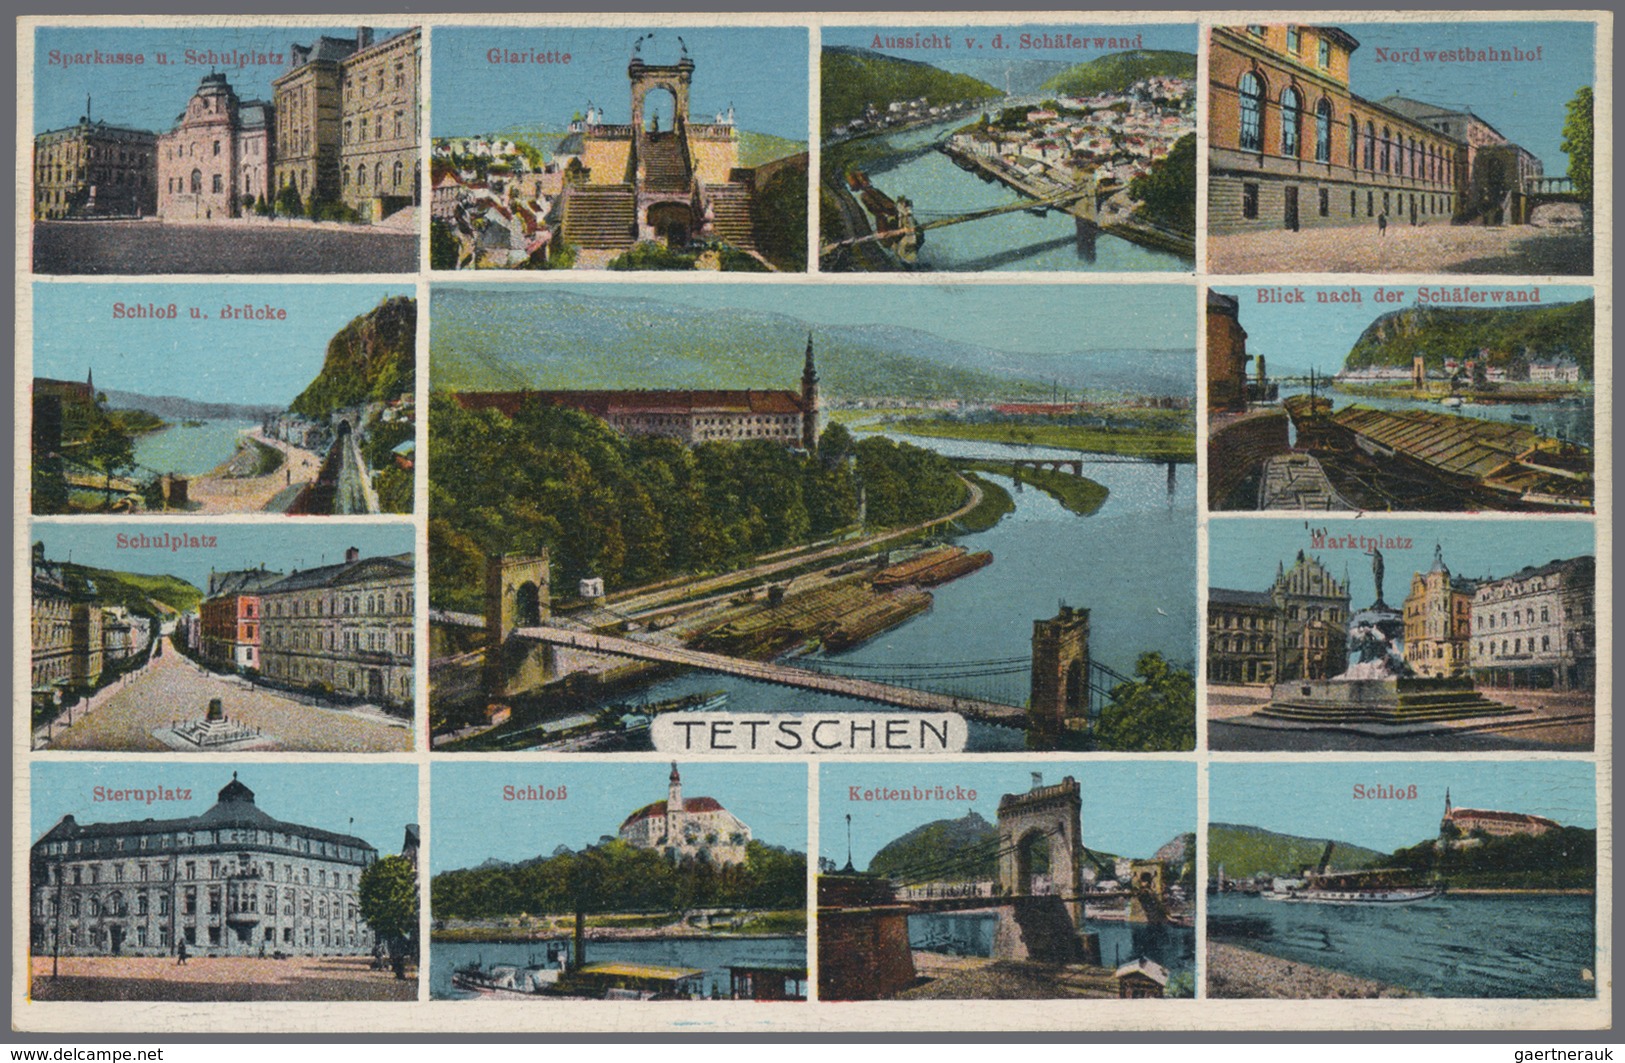 Ansichtskarten: Alle Welt: Kollektion von 100 Ansichtskarten aus der Tschechoslovakei, Böhmen und an